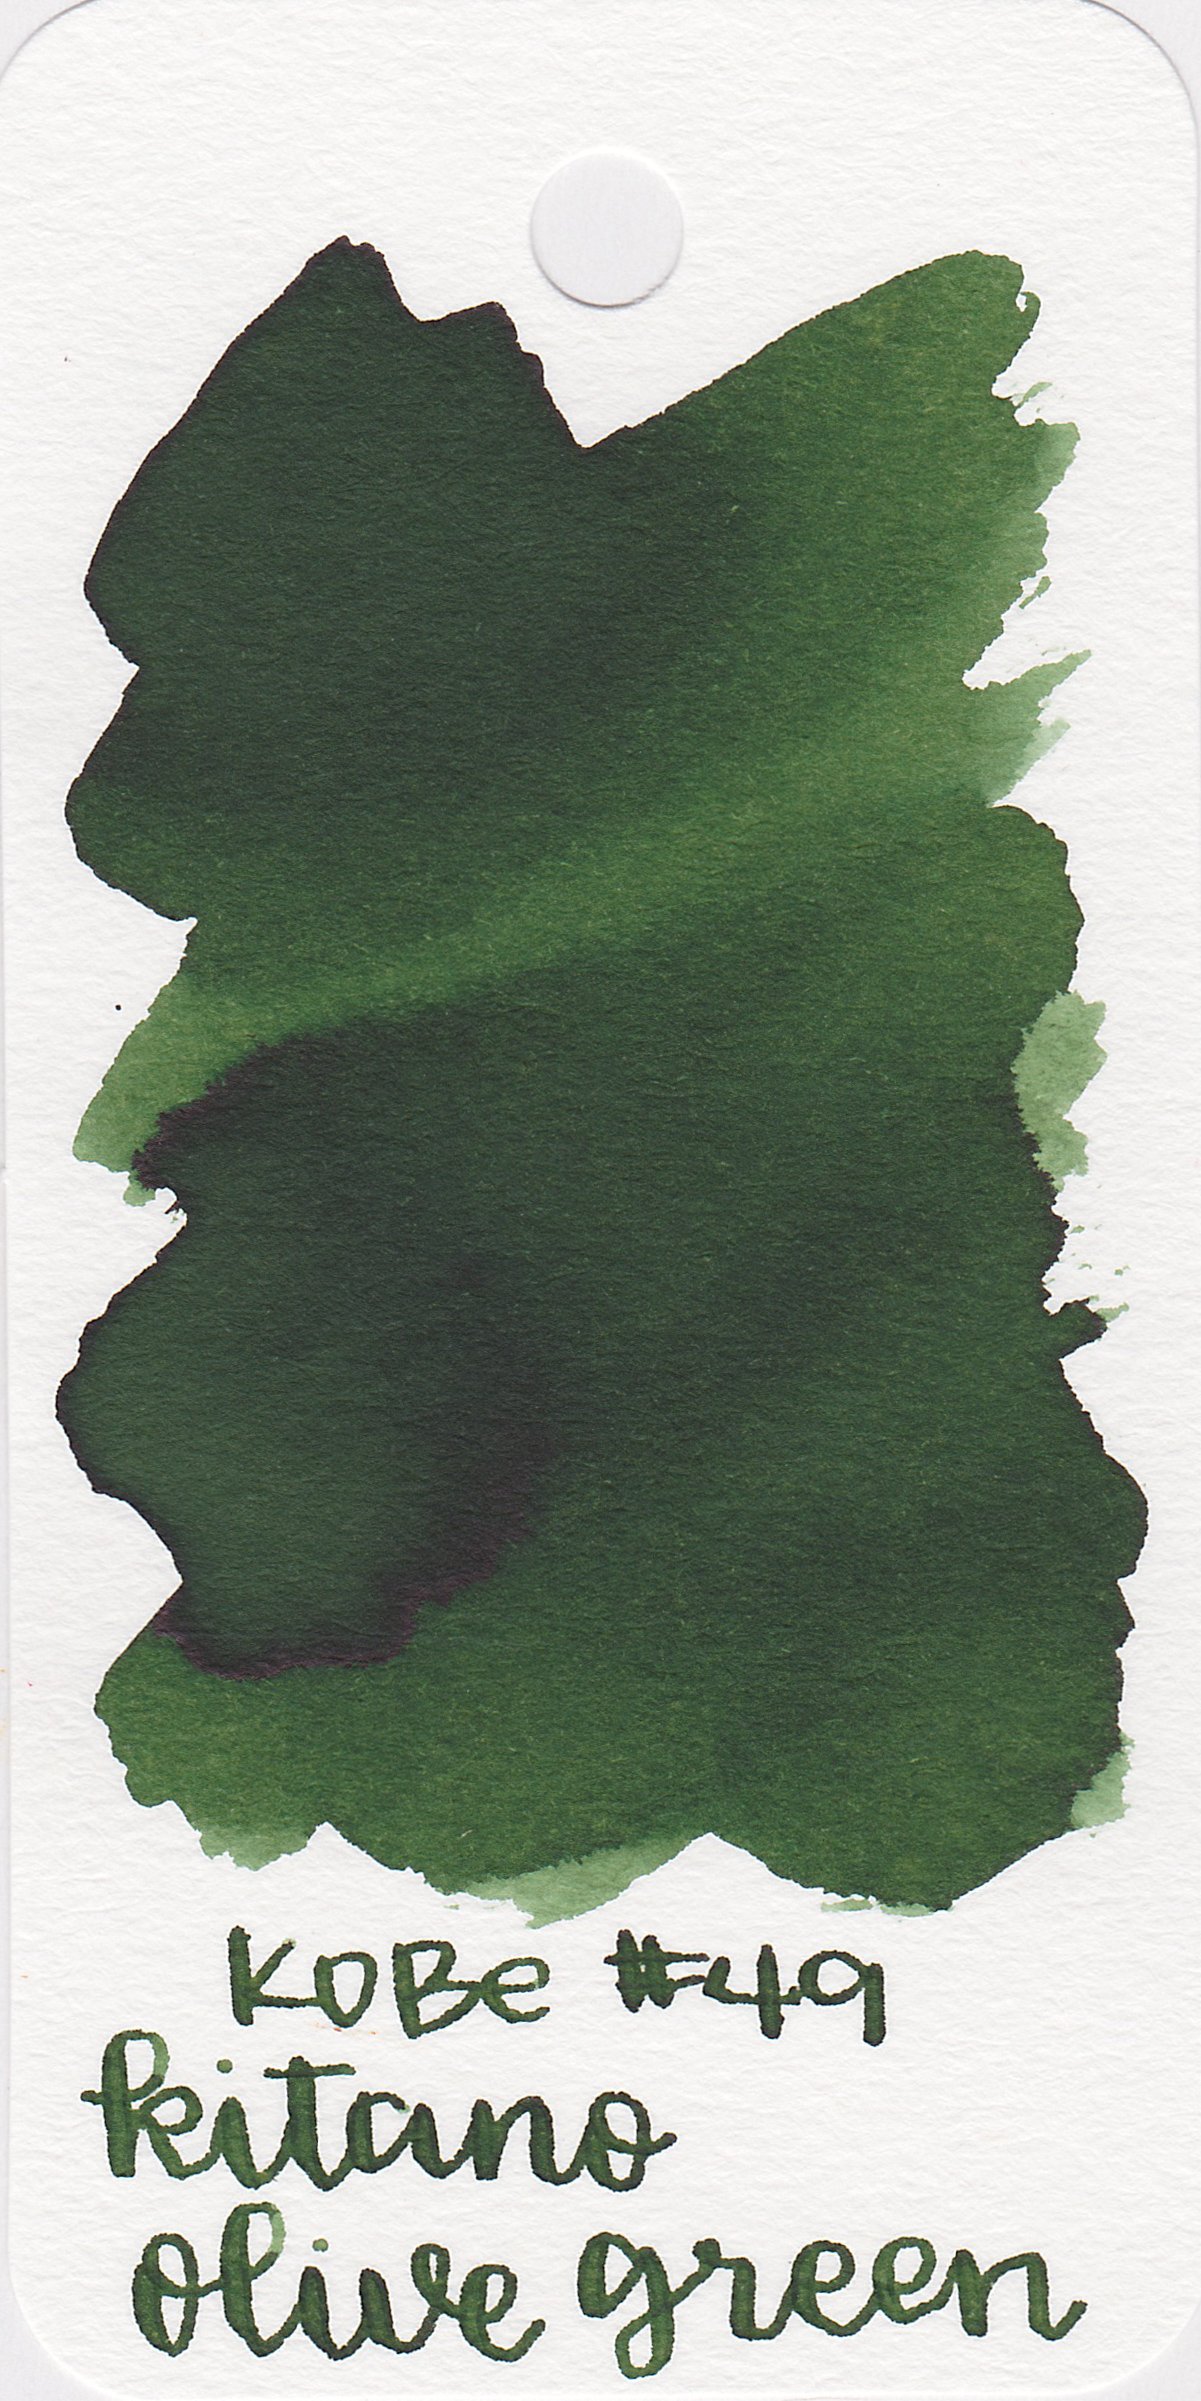 nk-kitano-olive-green-1.jpg